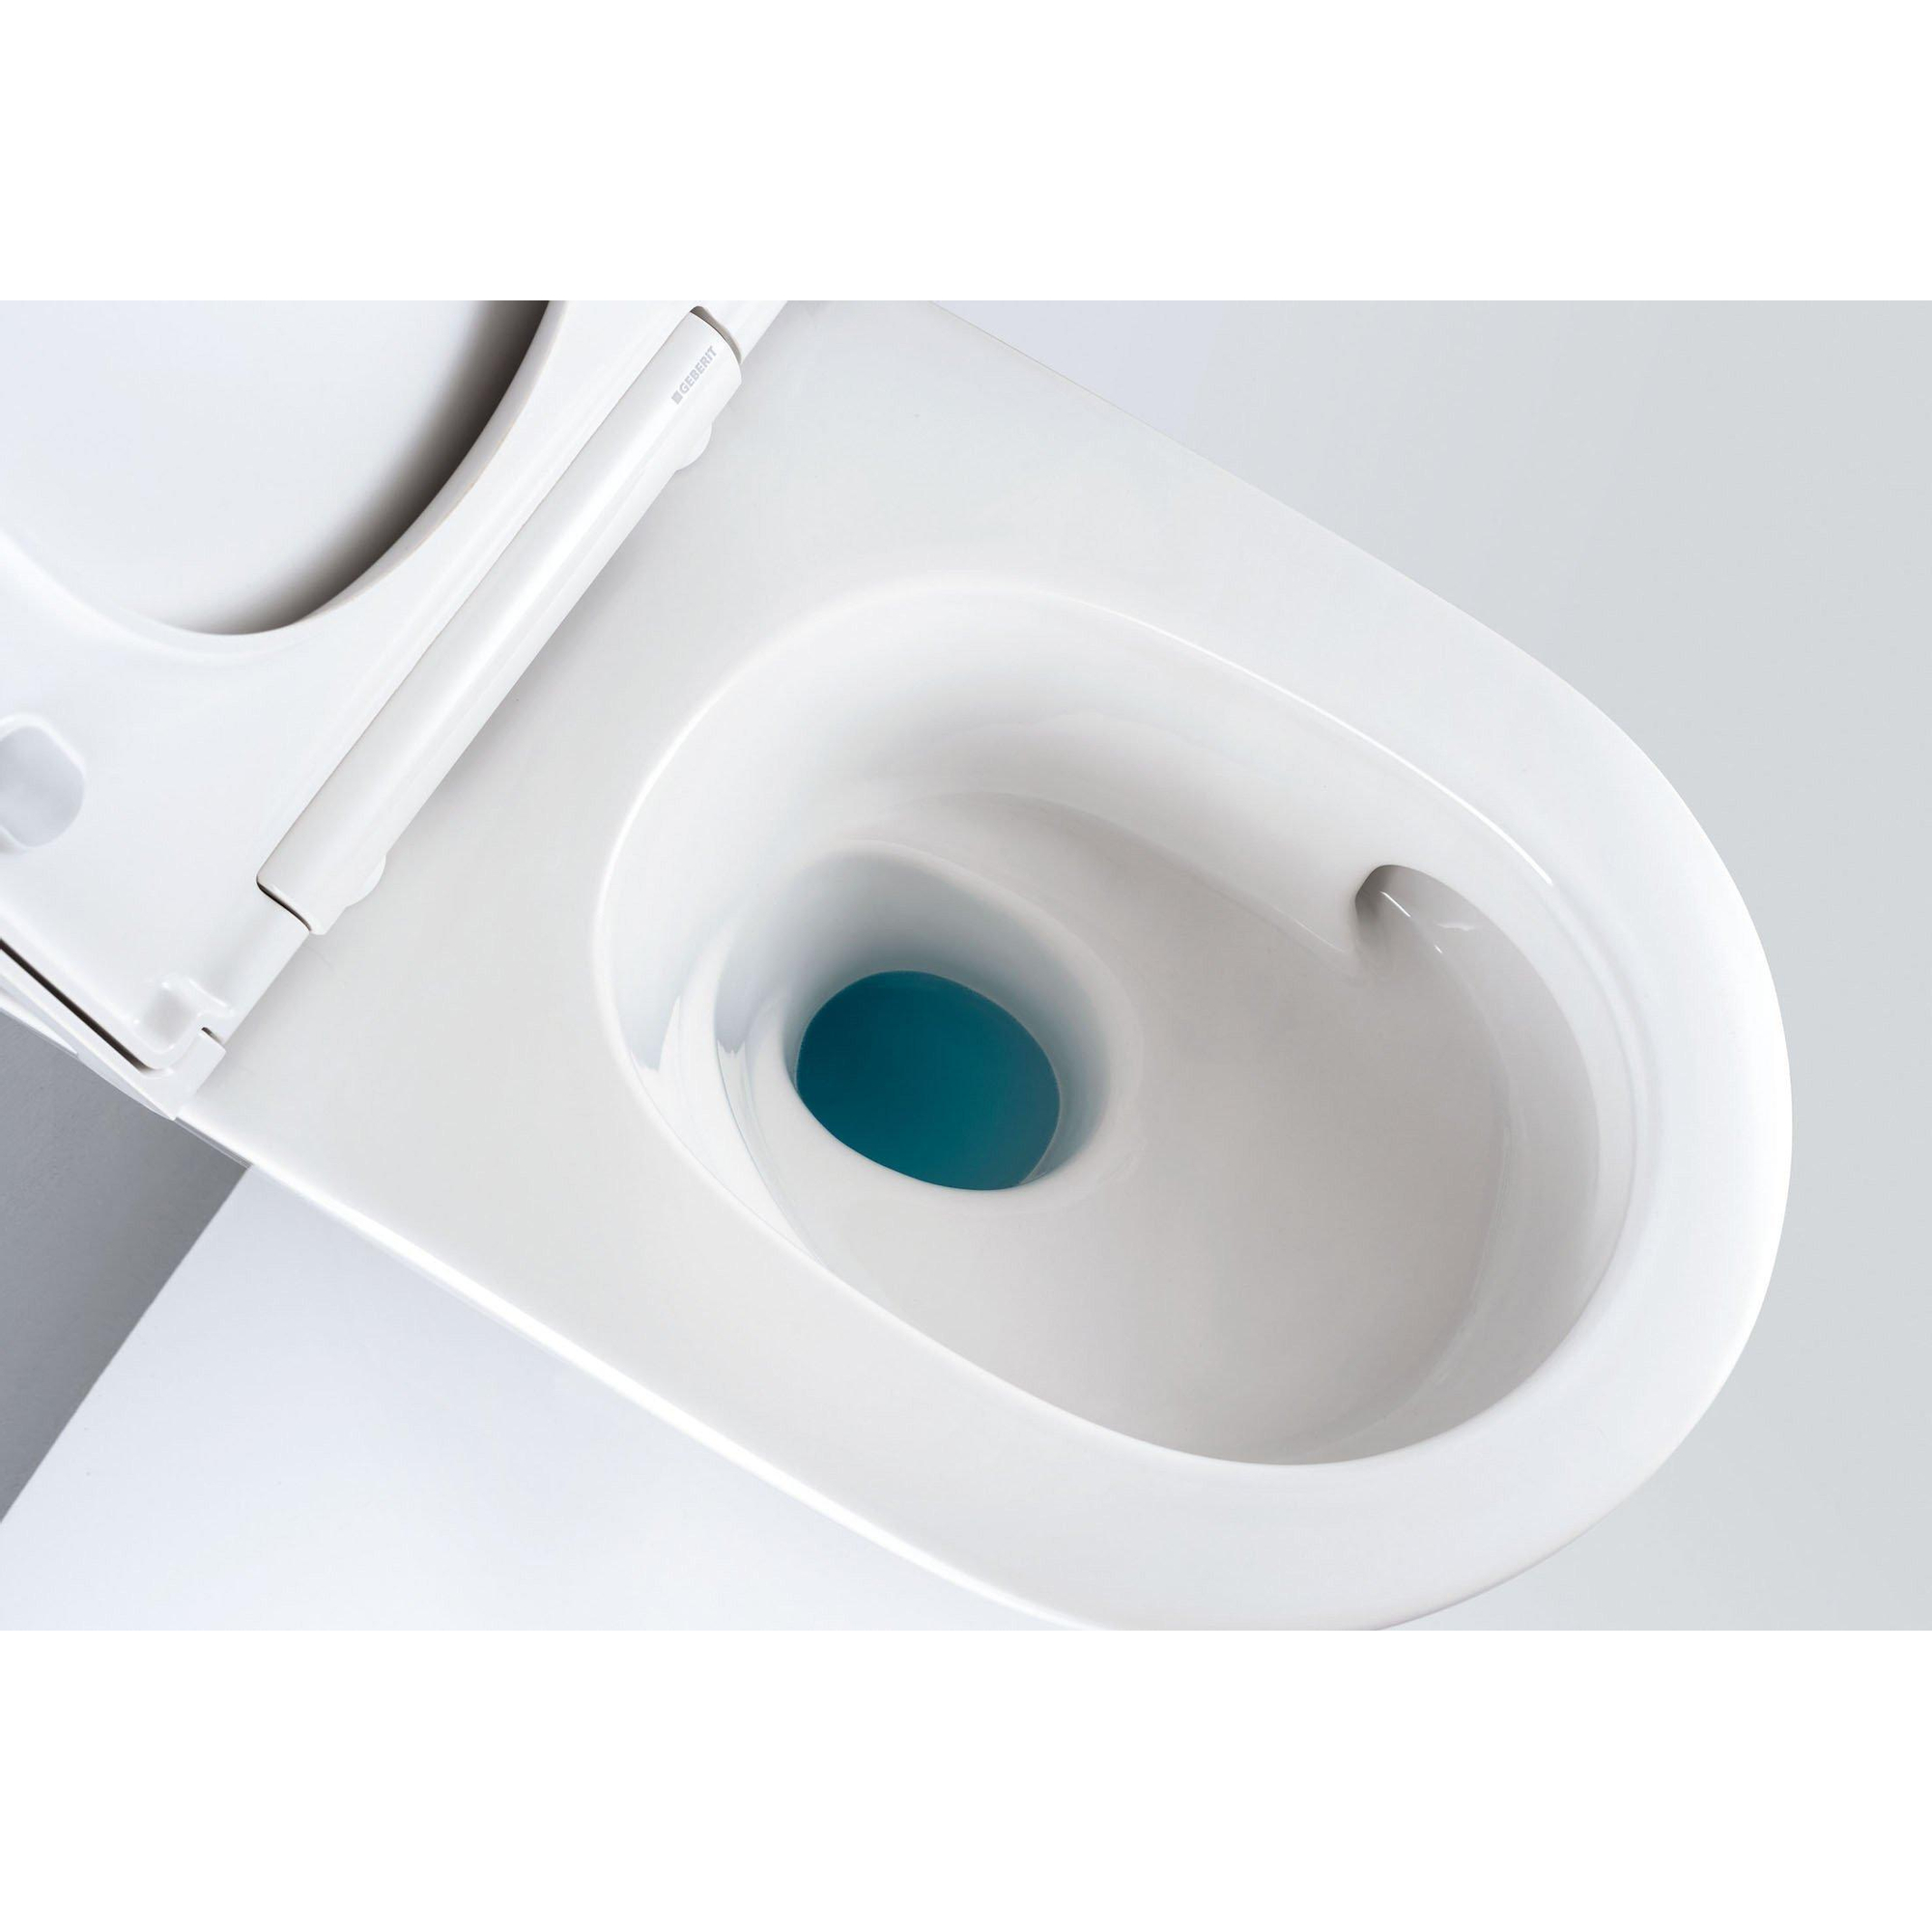 Combiné sanitaire à poser ABS blanc-5138